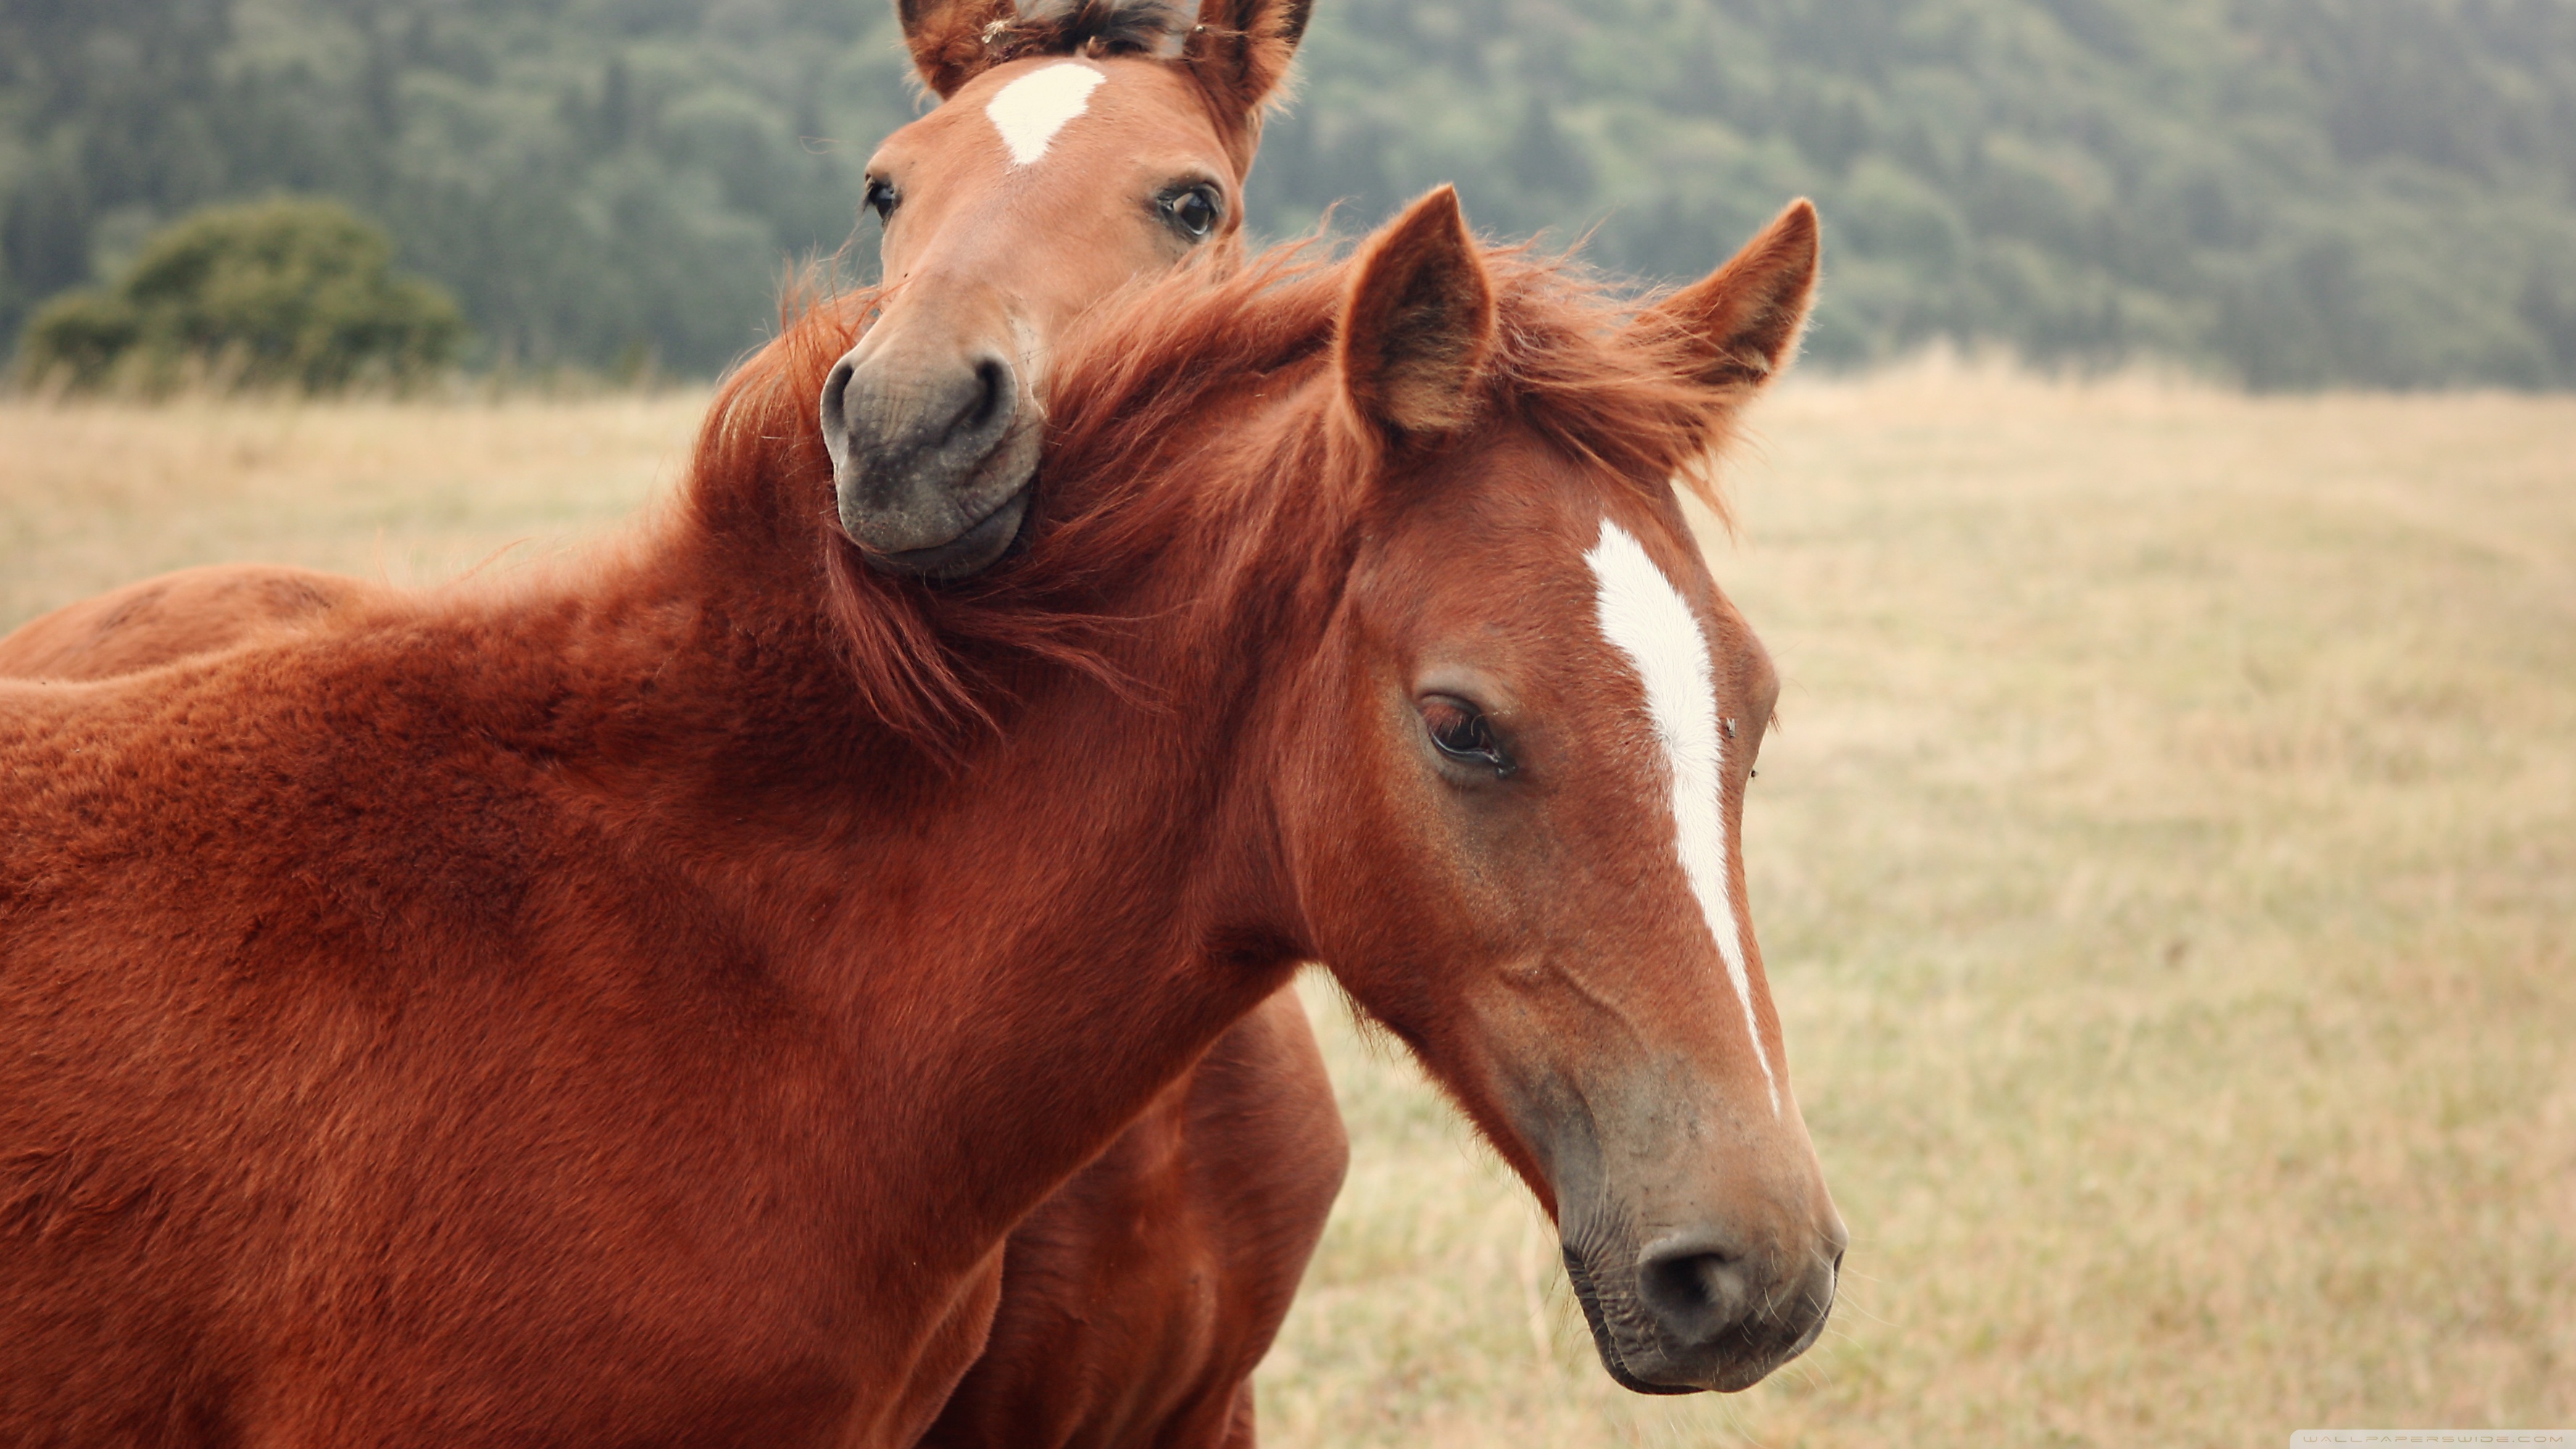 Обои на рабочий лошадь. Лошади. Обои лошади. Картинки лошадей красивые. Две лошади.